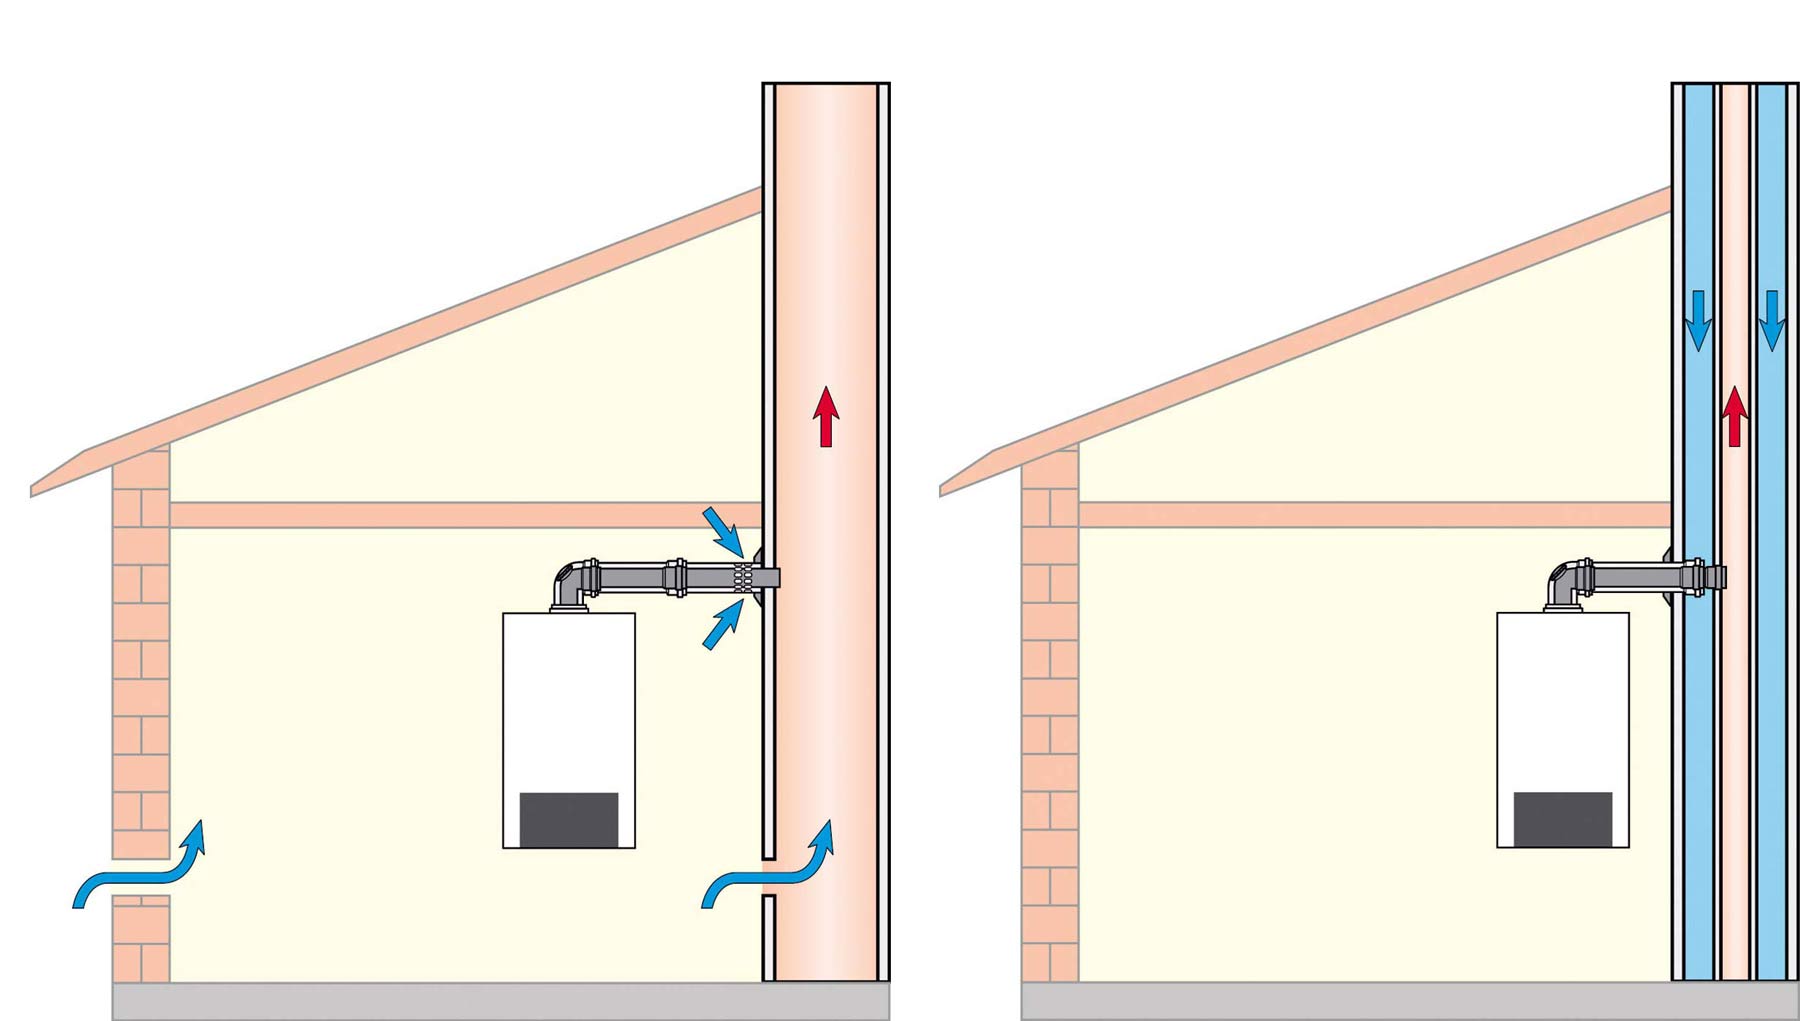 Obr. 5 a) Jednoduchý komín s jedním průduchem neumožňuje přívod spalovacího vzduchu. Kotel je tehdy závislý na vzduchu z místnosti a ochlazuje místnost studeným vzduchem přiváděným zvenku. b) Další možností, jak neochlazovat místnost vnějším vzduchem, je připojit na kotel samostatné potrubí k nasávání vzduchu.